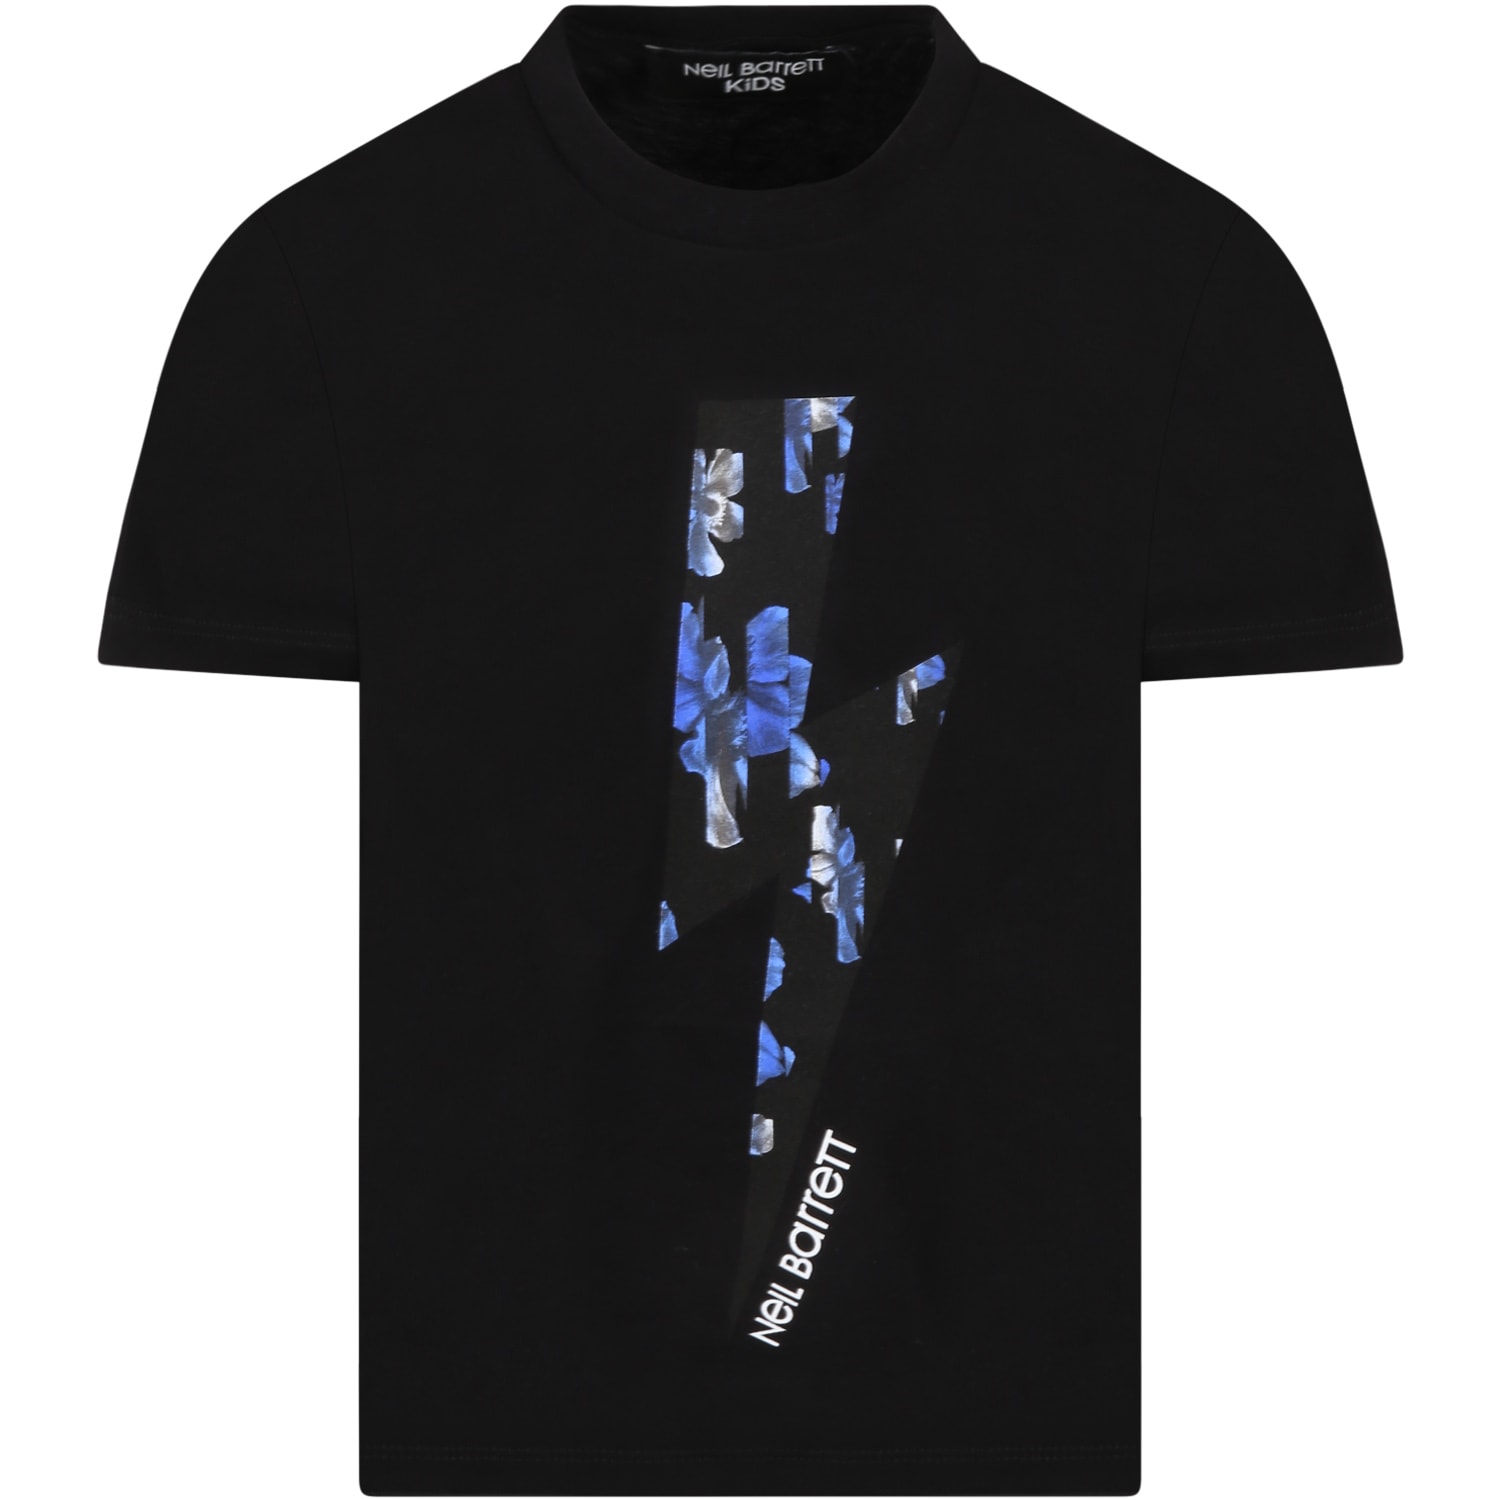 Neil Barrett Black T-shirt For Boy With Lightning